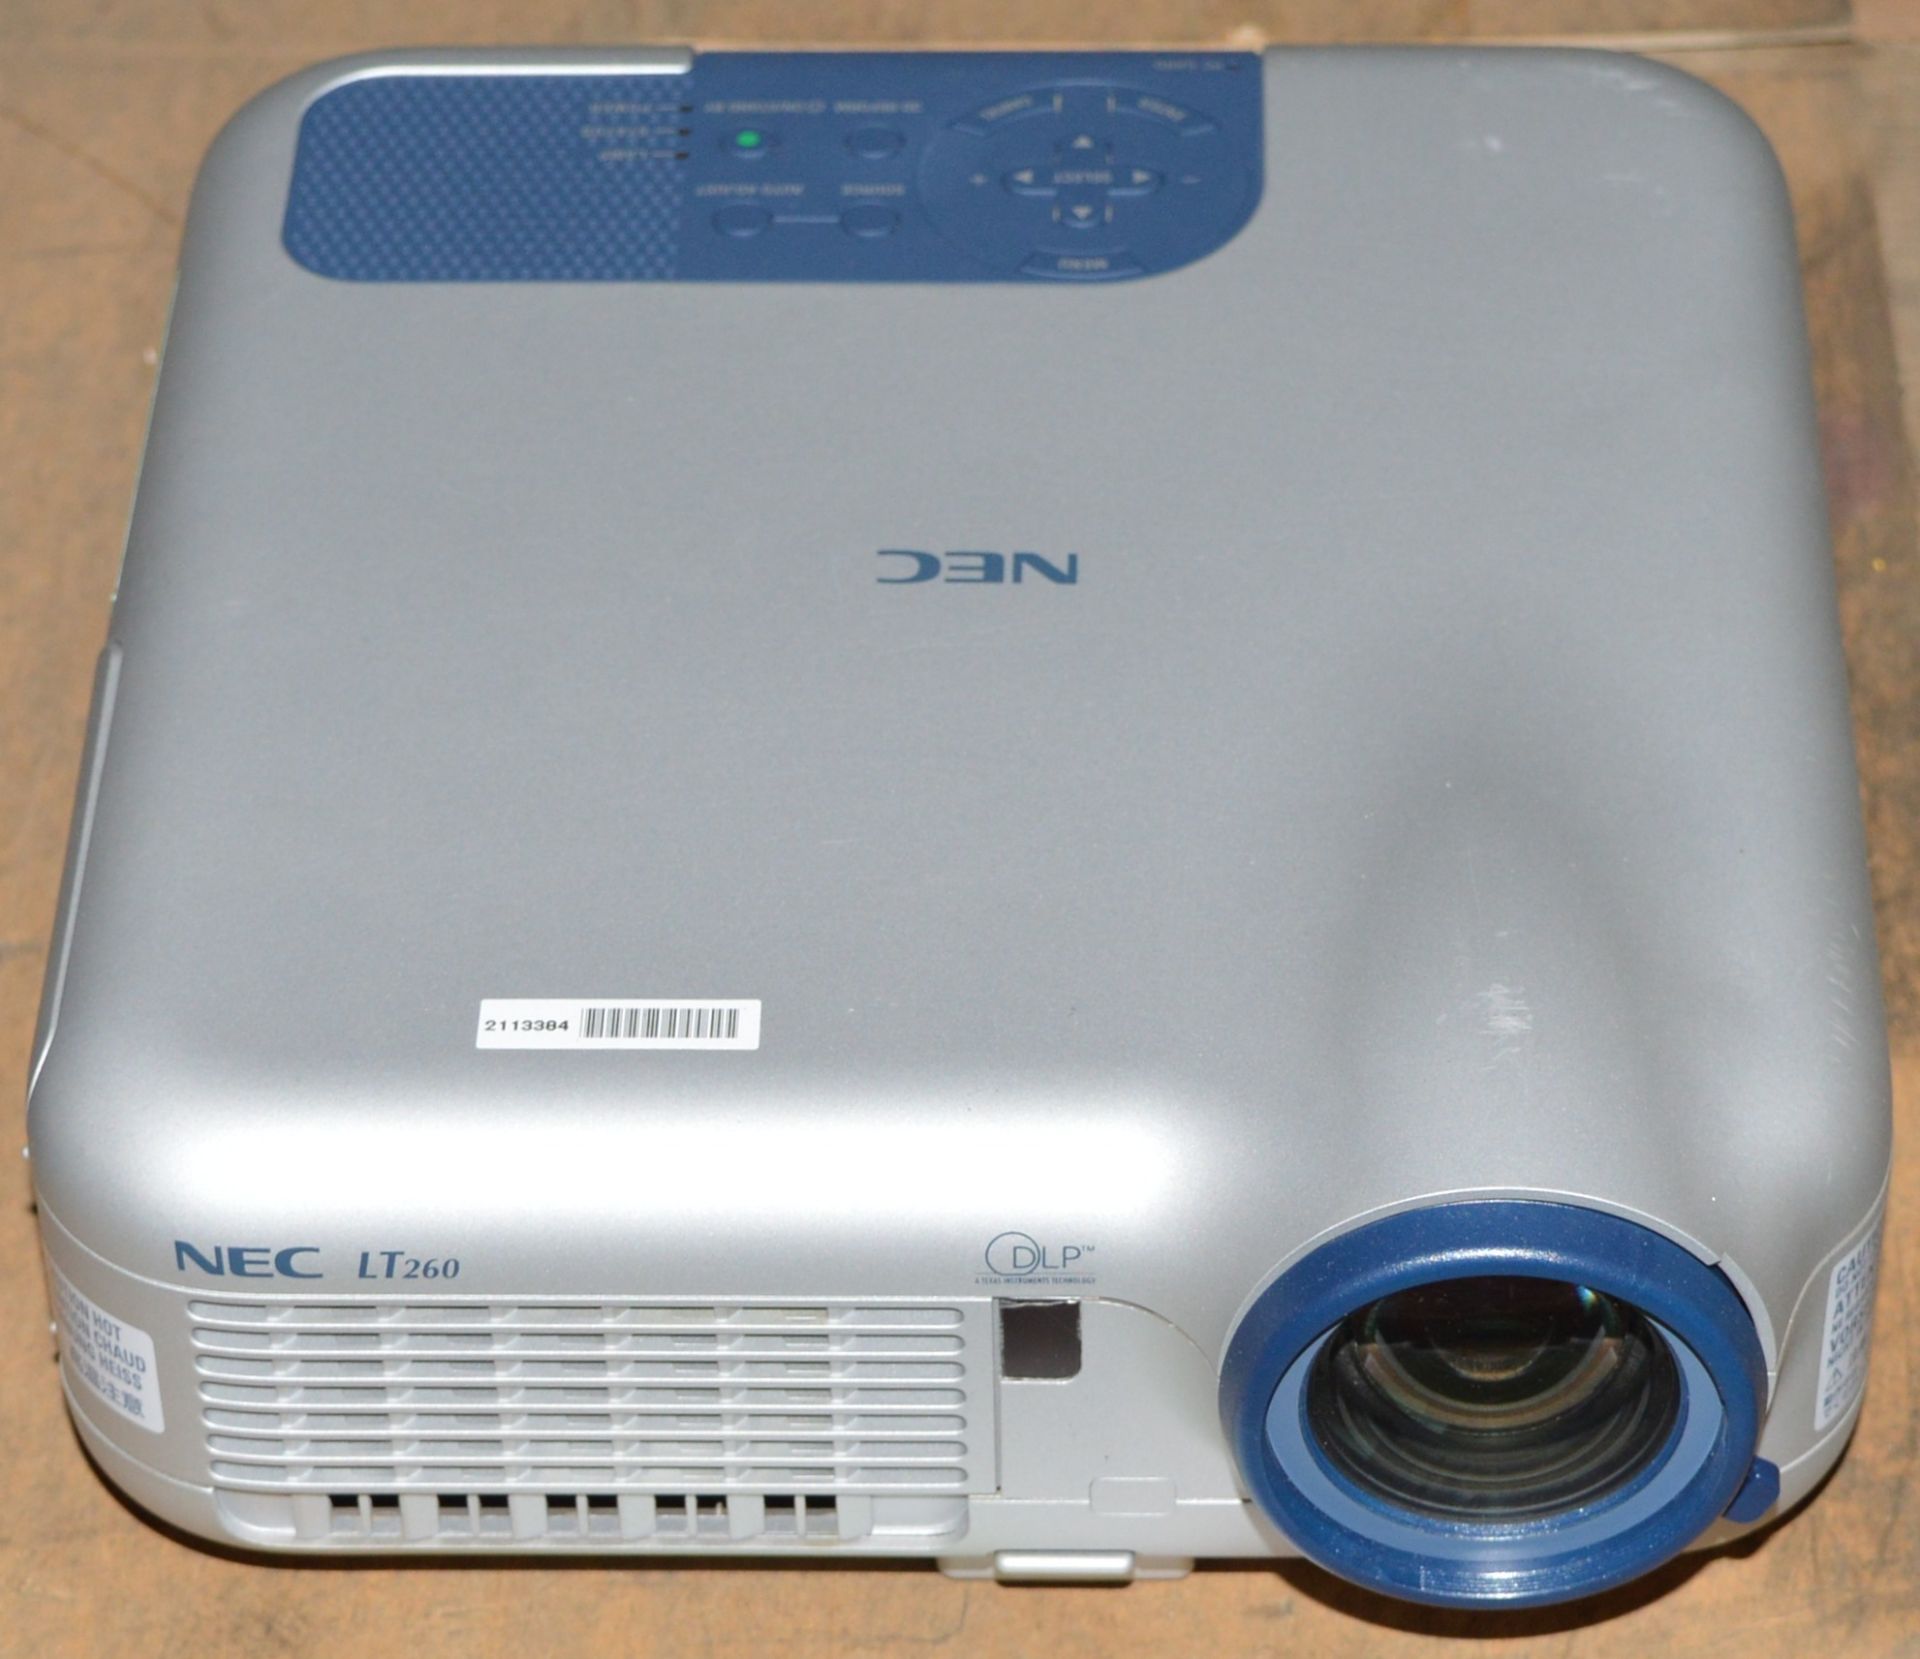 NEC LT260 Projector.